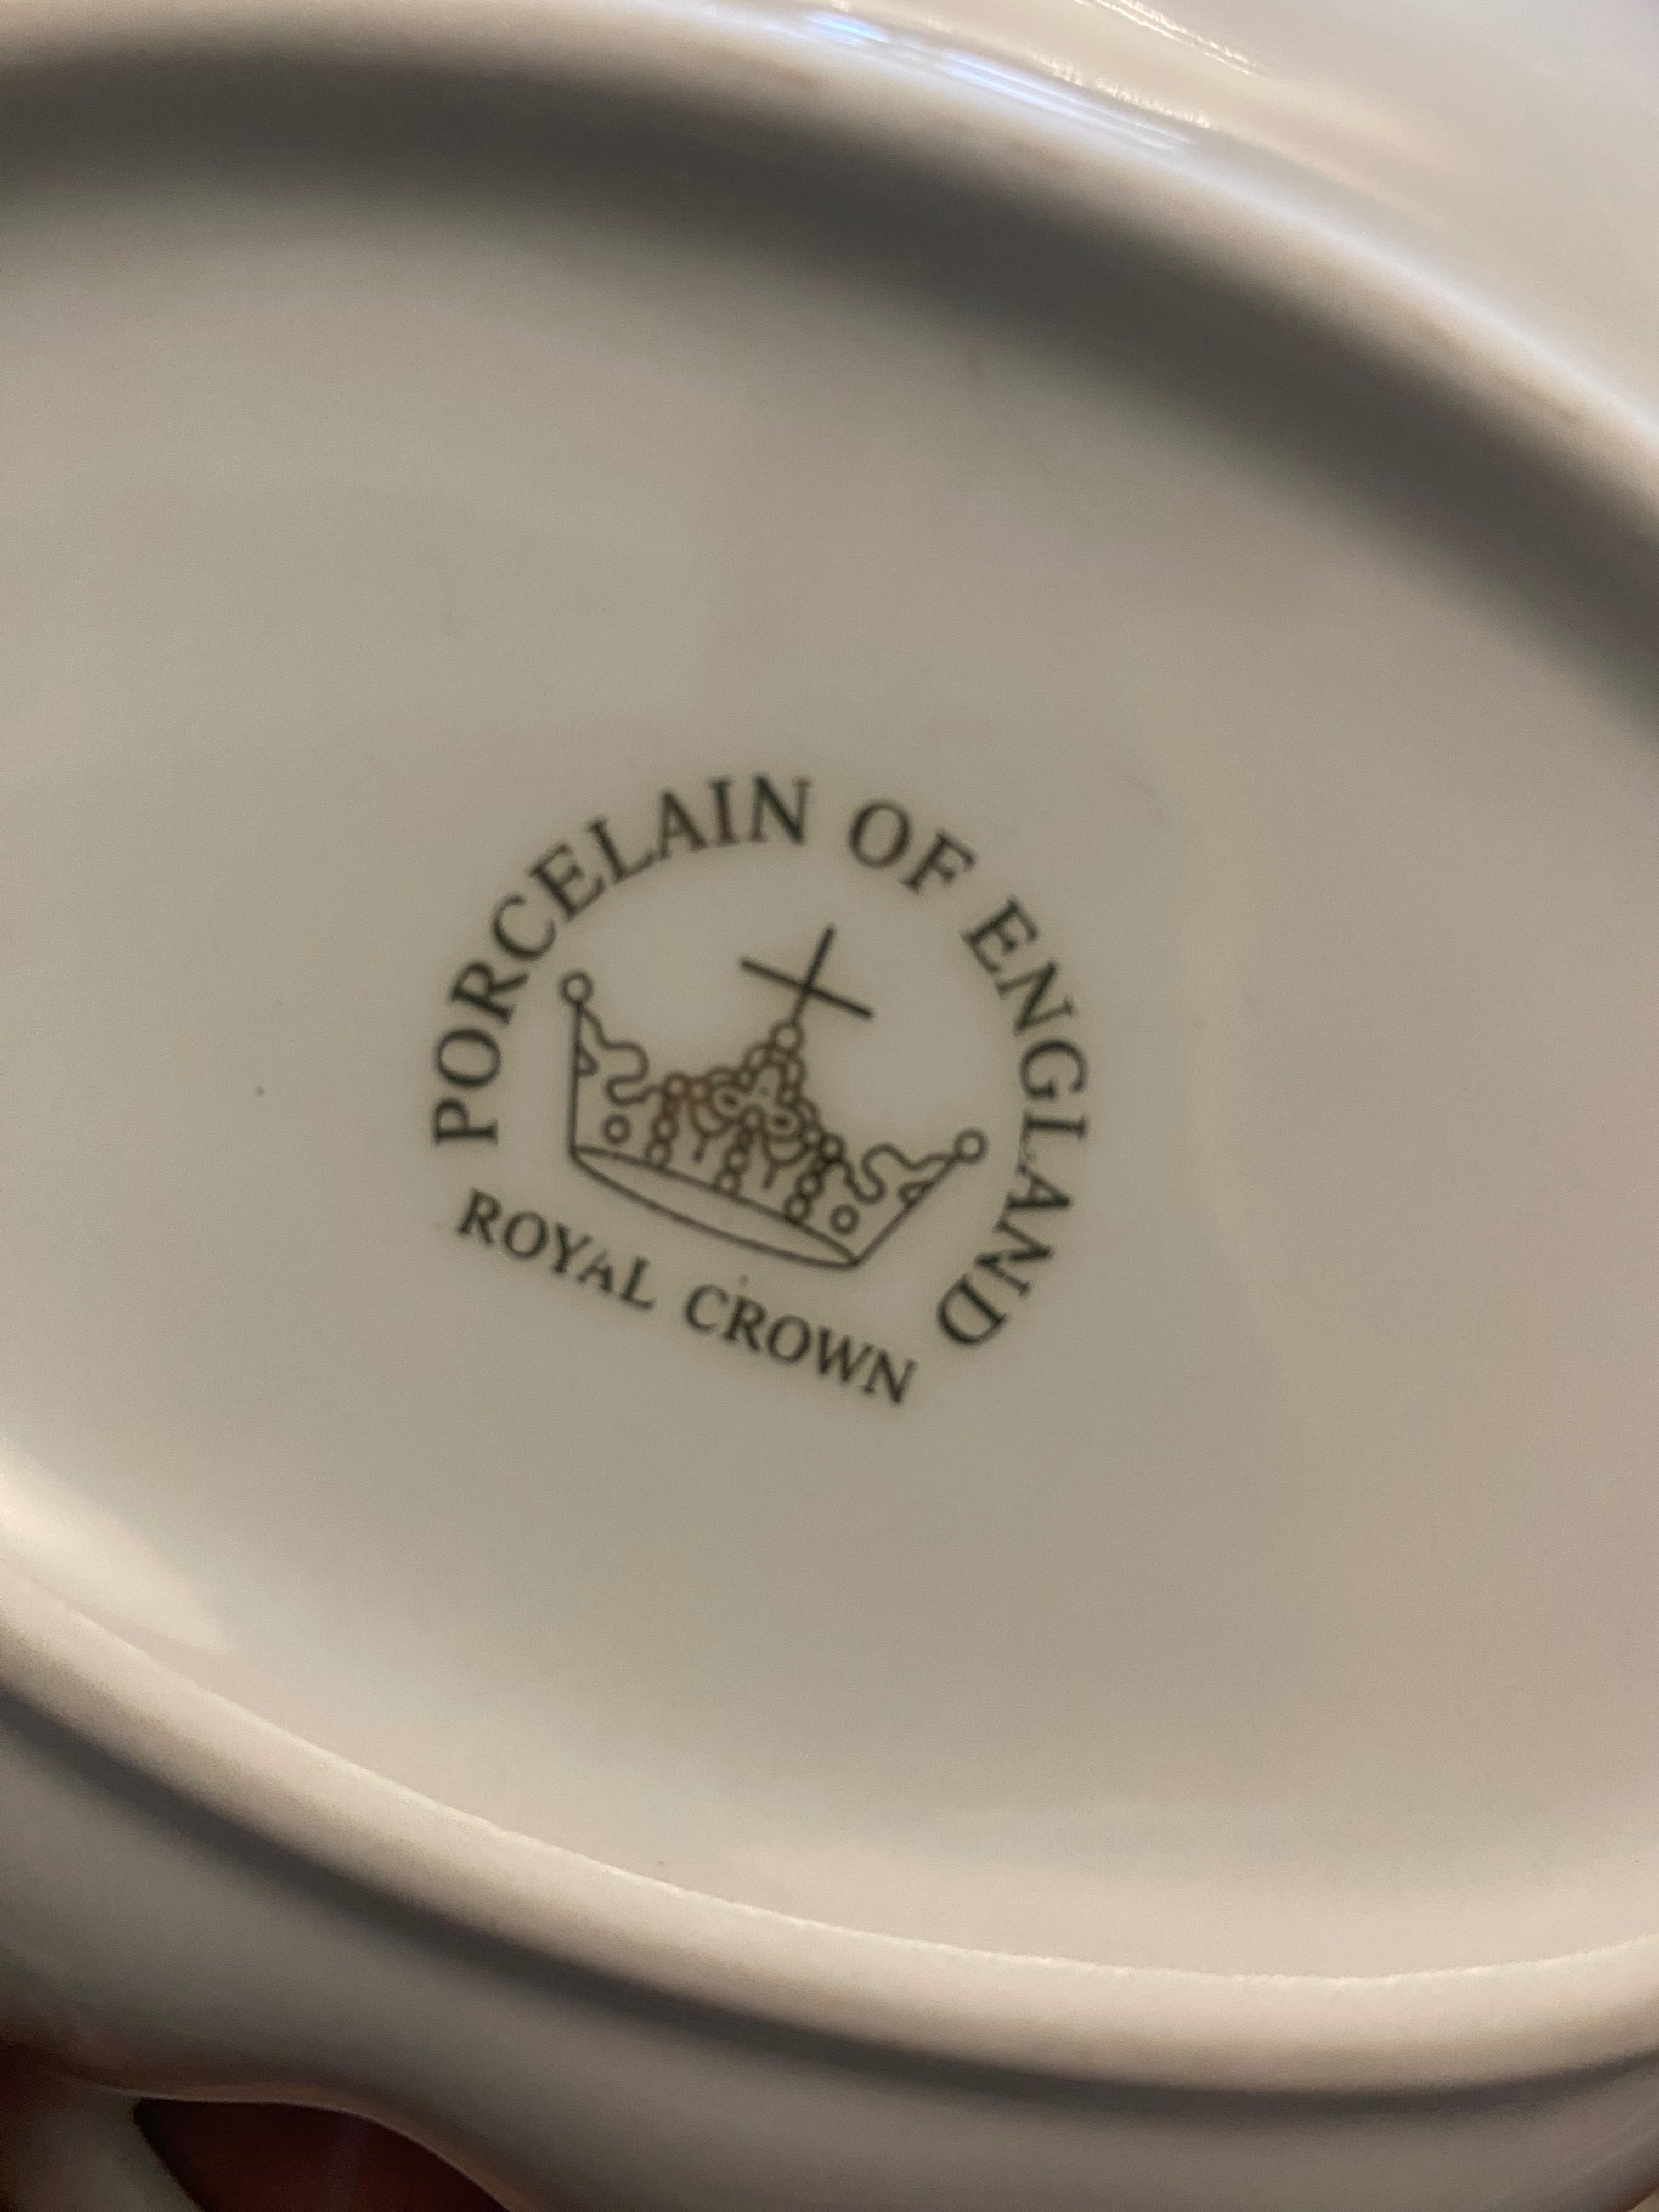 Сервіз  Royal crown Porcelain of England Англия  вінтаж чайний кофе